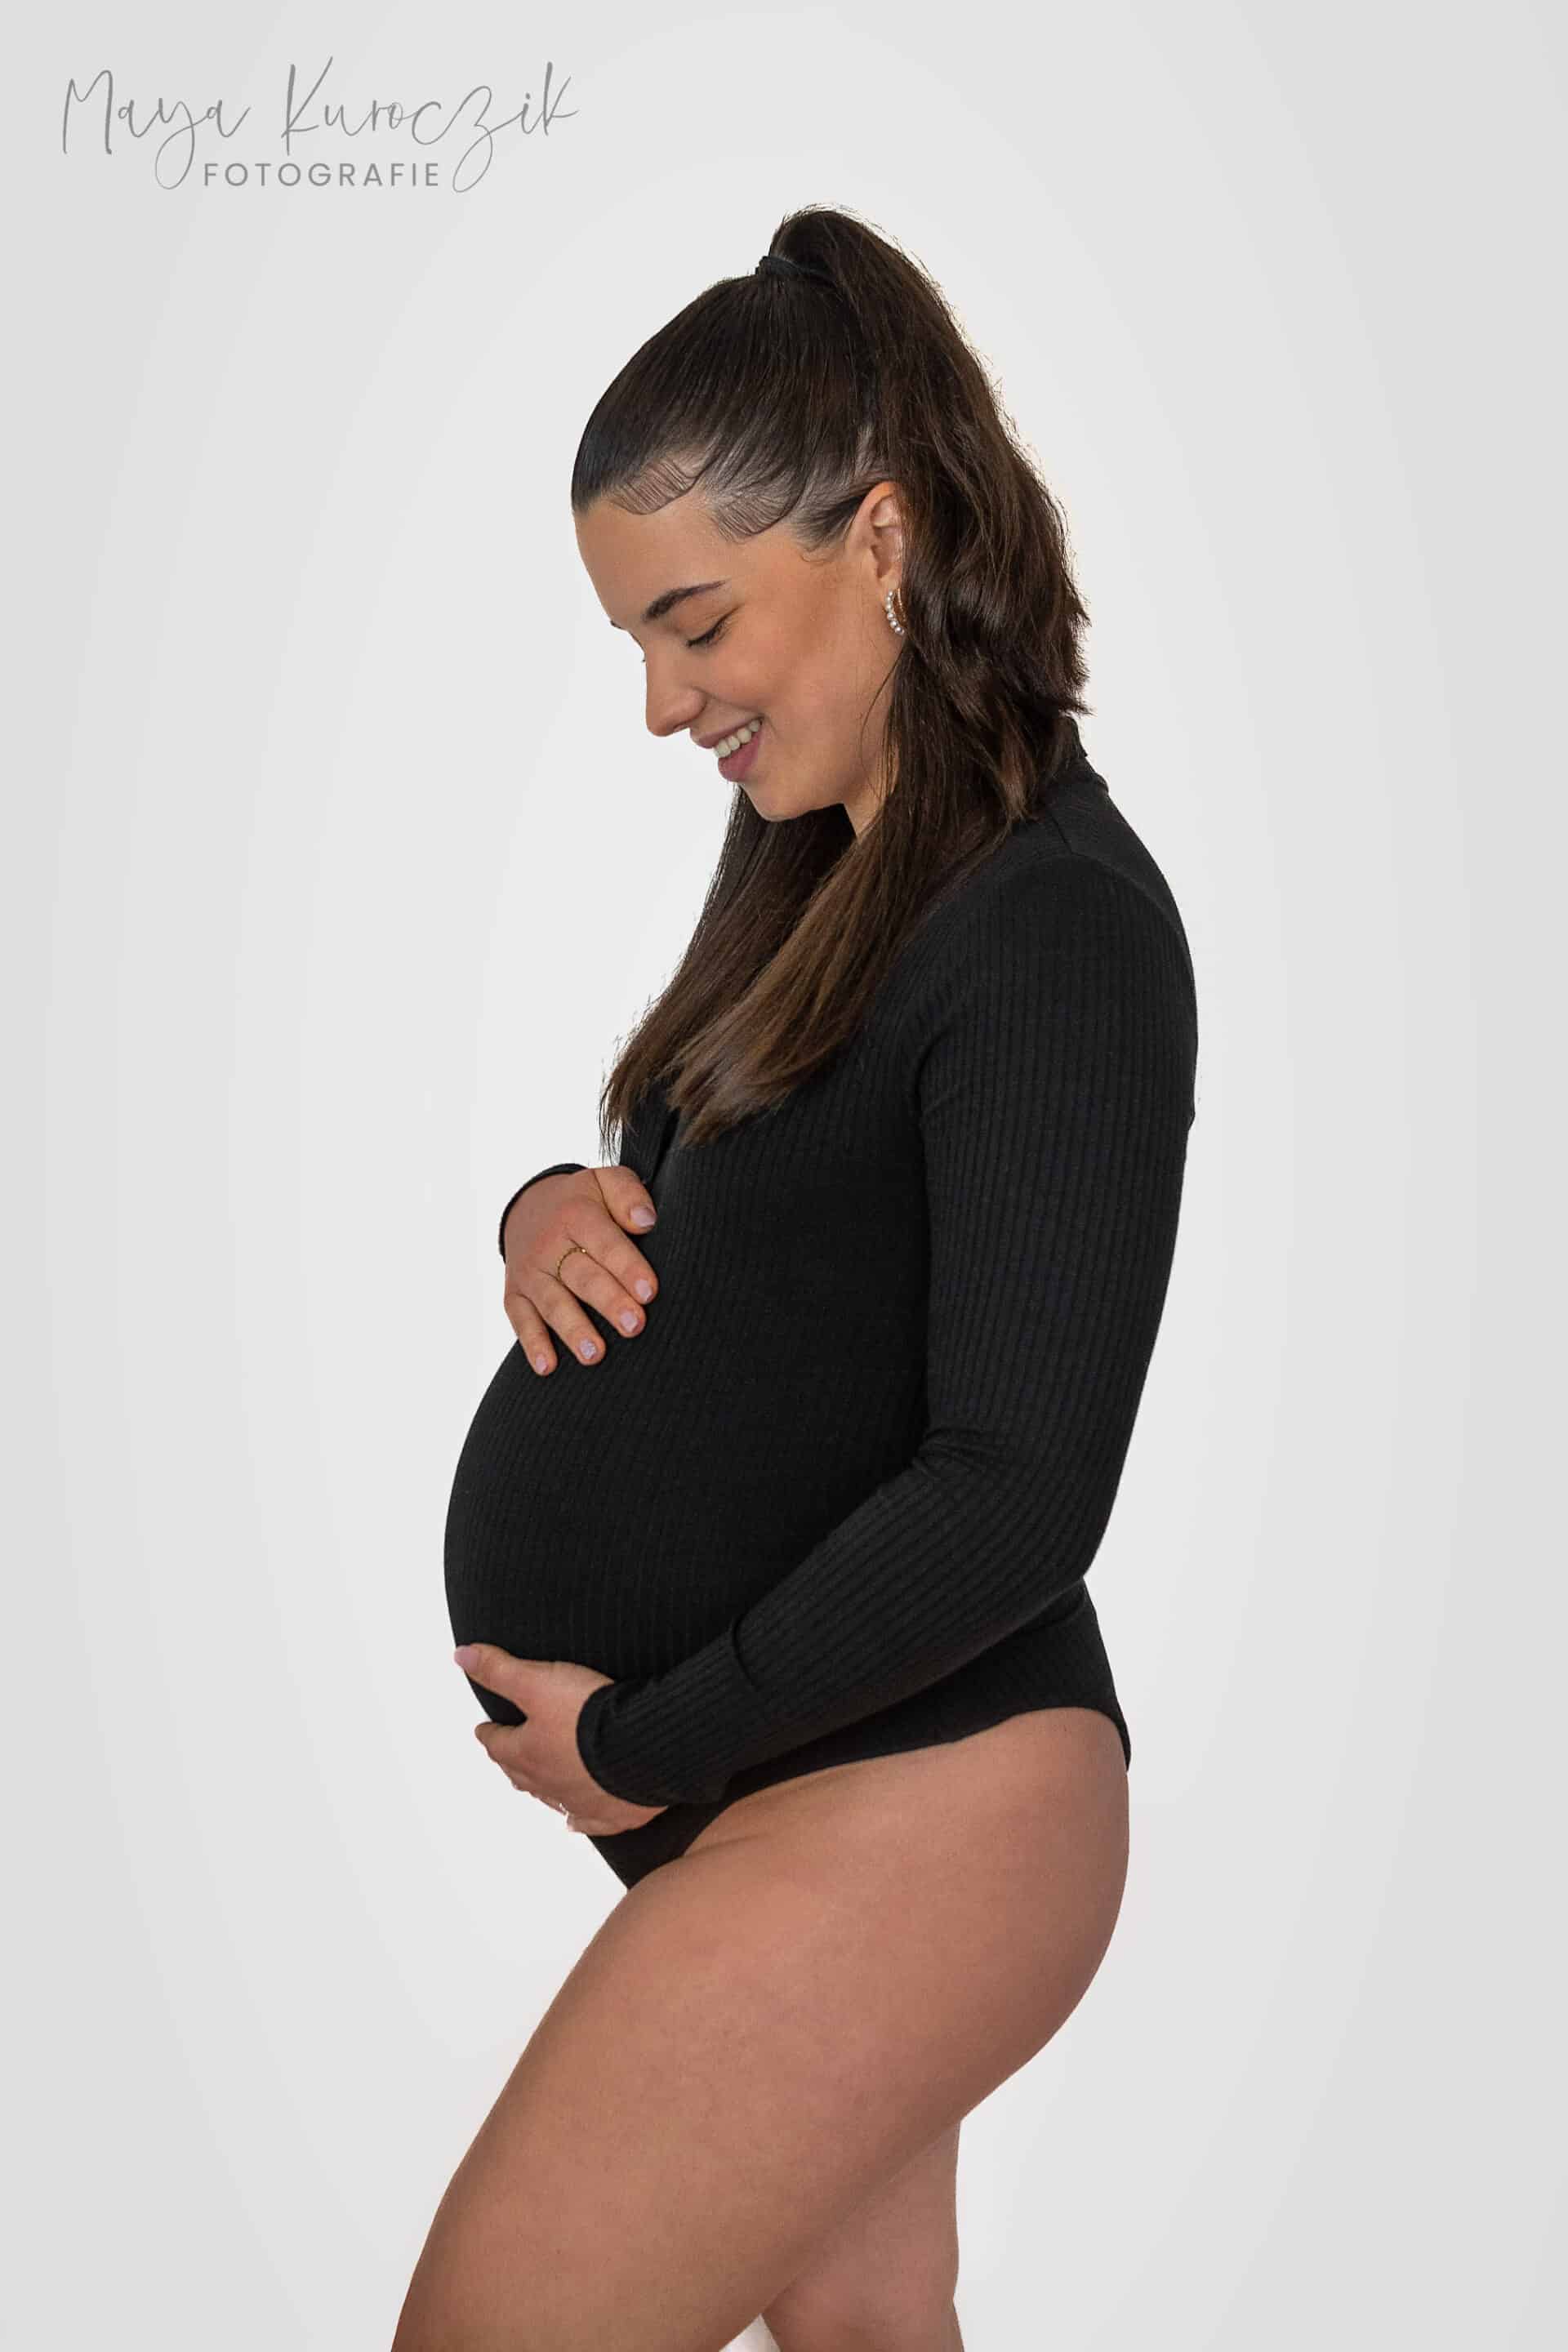 Schwangere Frau im schwarzen Body vor weißem Hintergrund